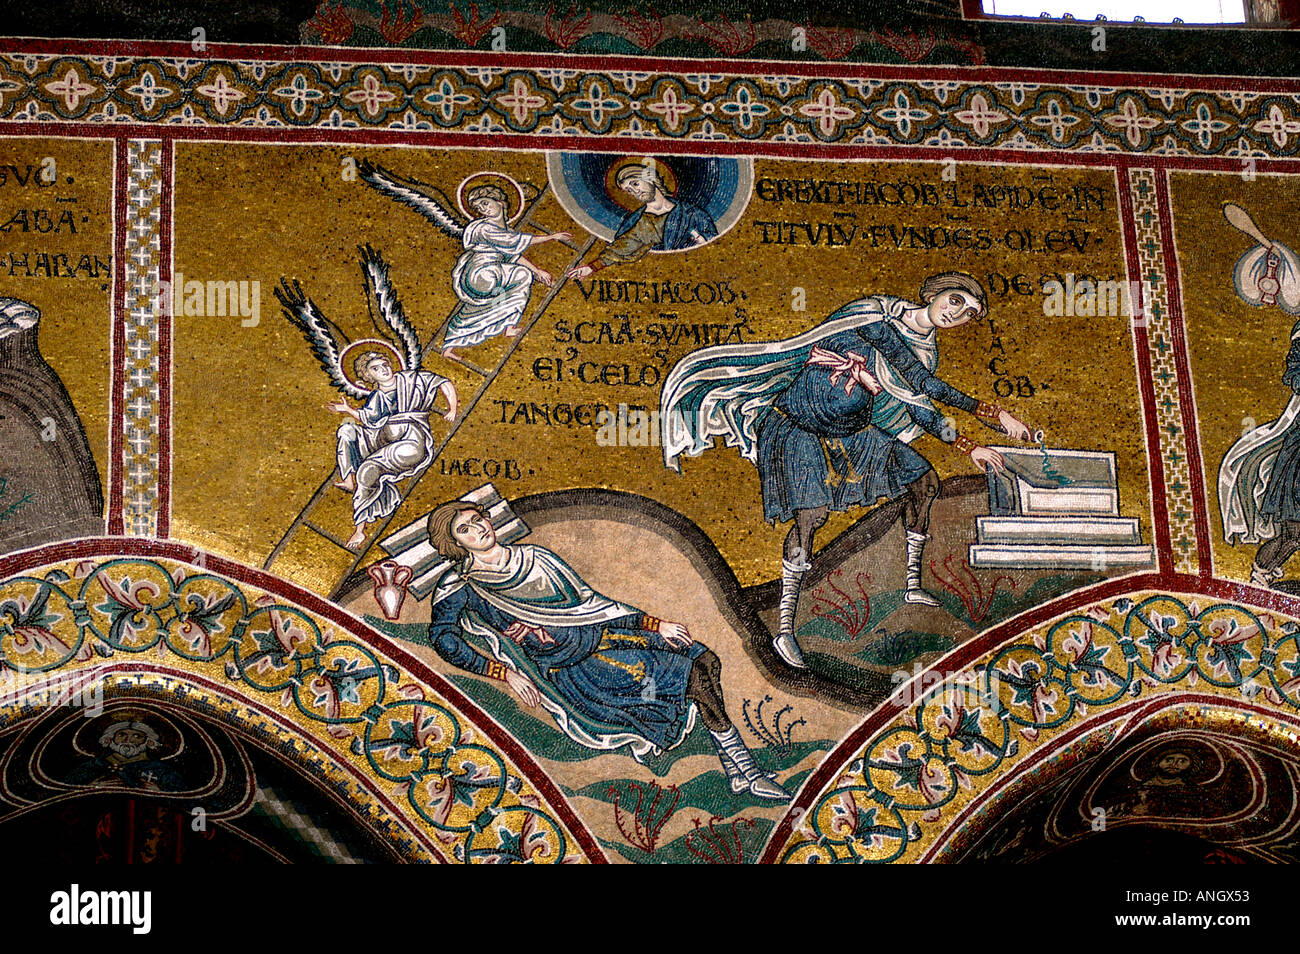 Kathedrale von Monreale, Cattedrale di Santa Maria Nuova di Monreale, Palermo, Sizilien, großes existierendes Beispiel normannischer Architektur, byzantinische Mosaiken Stockfoto